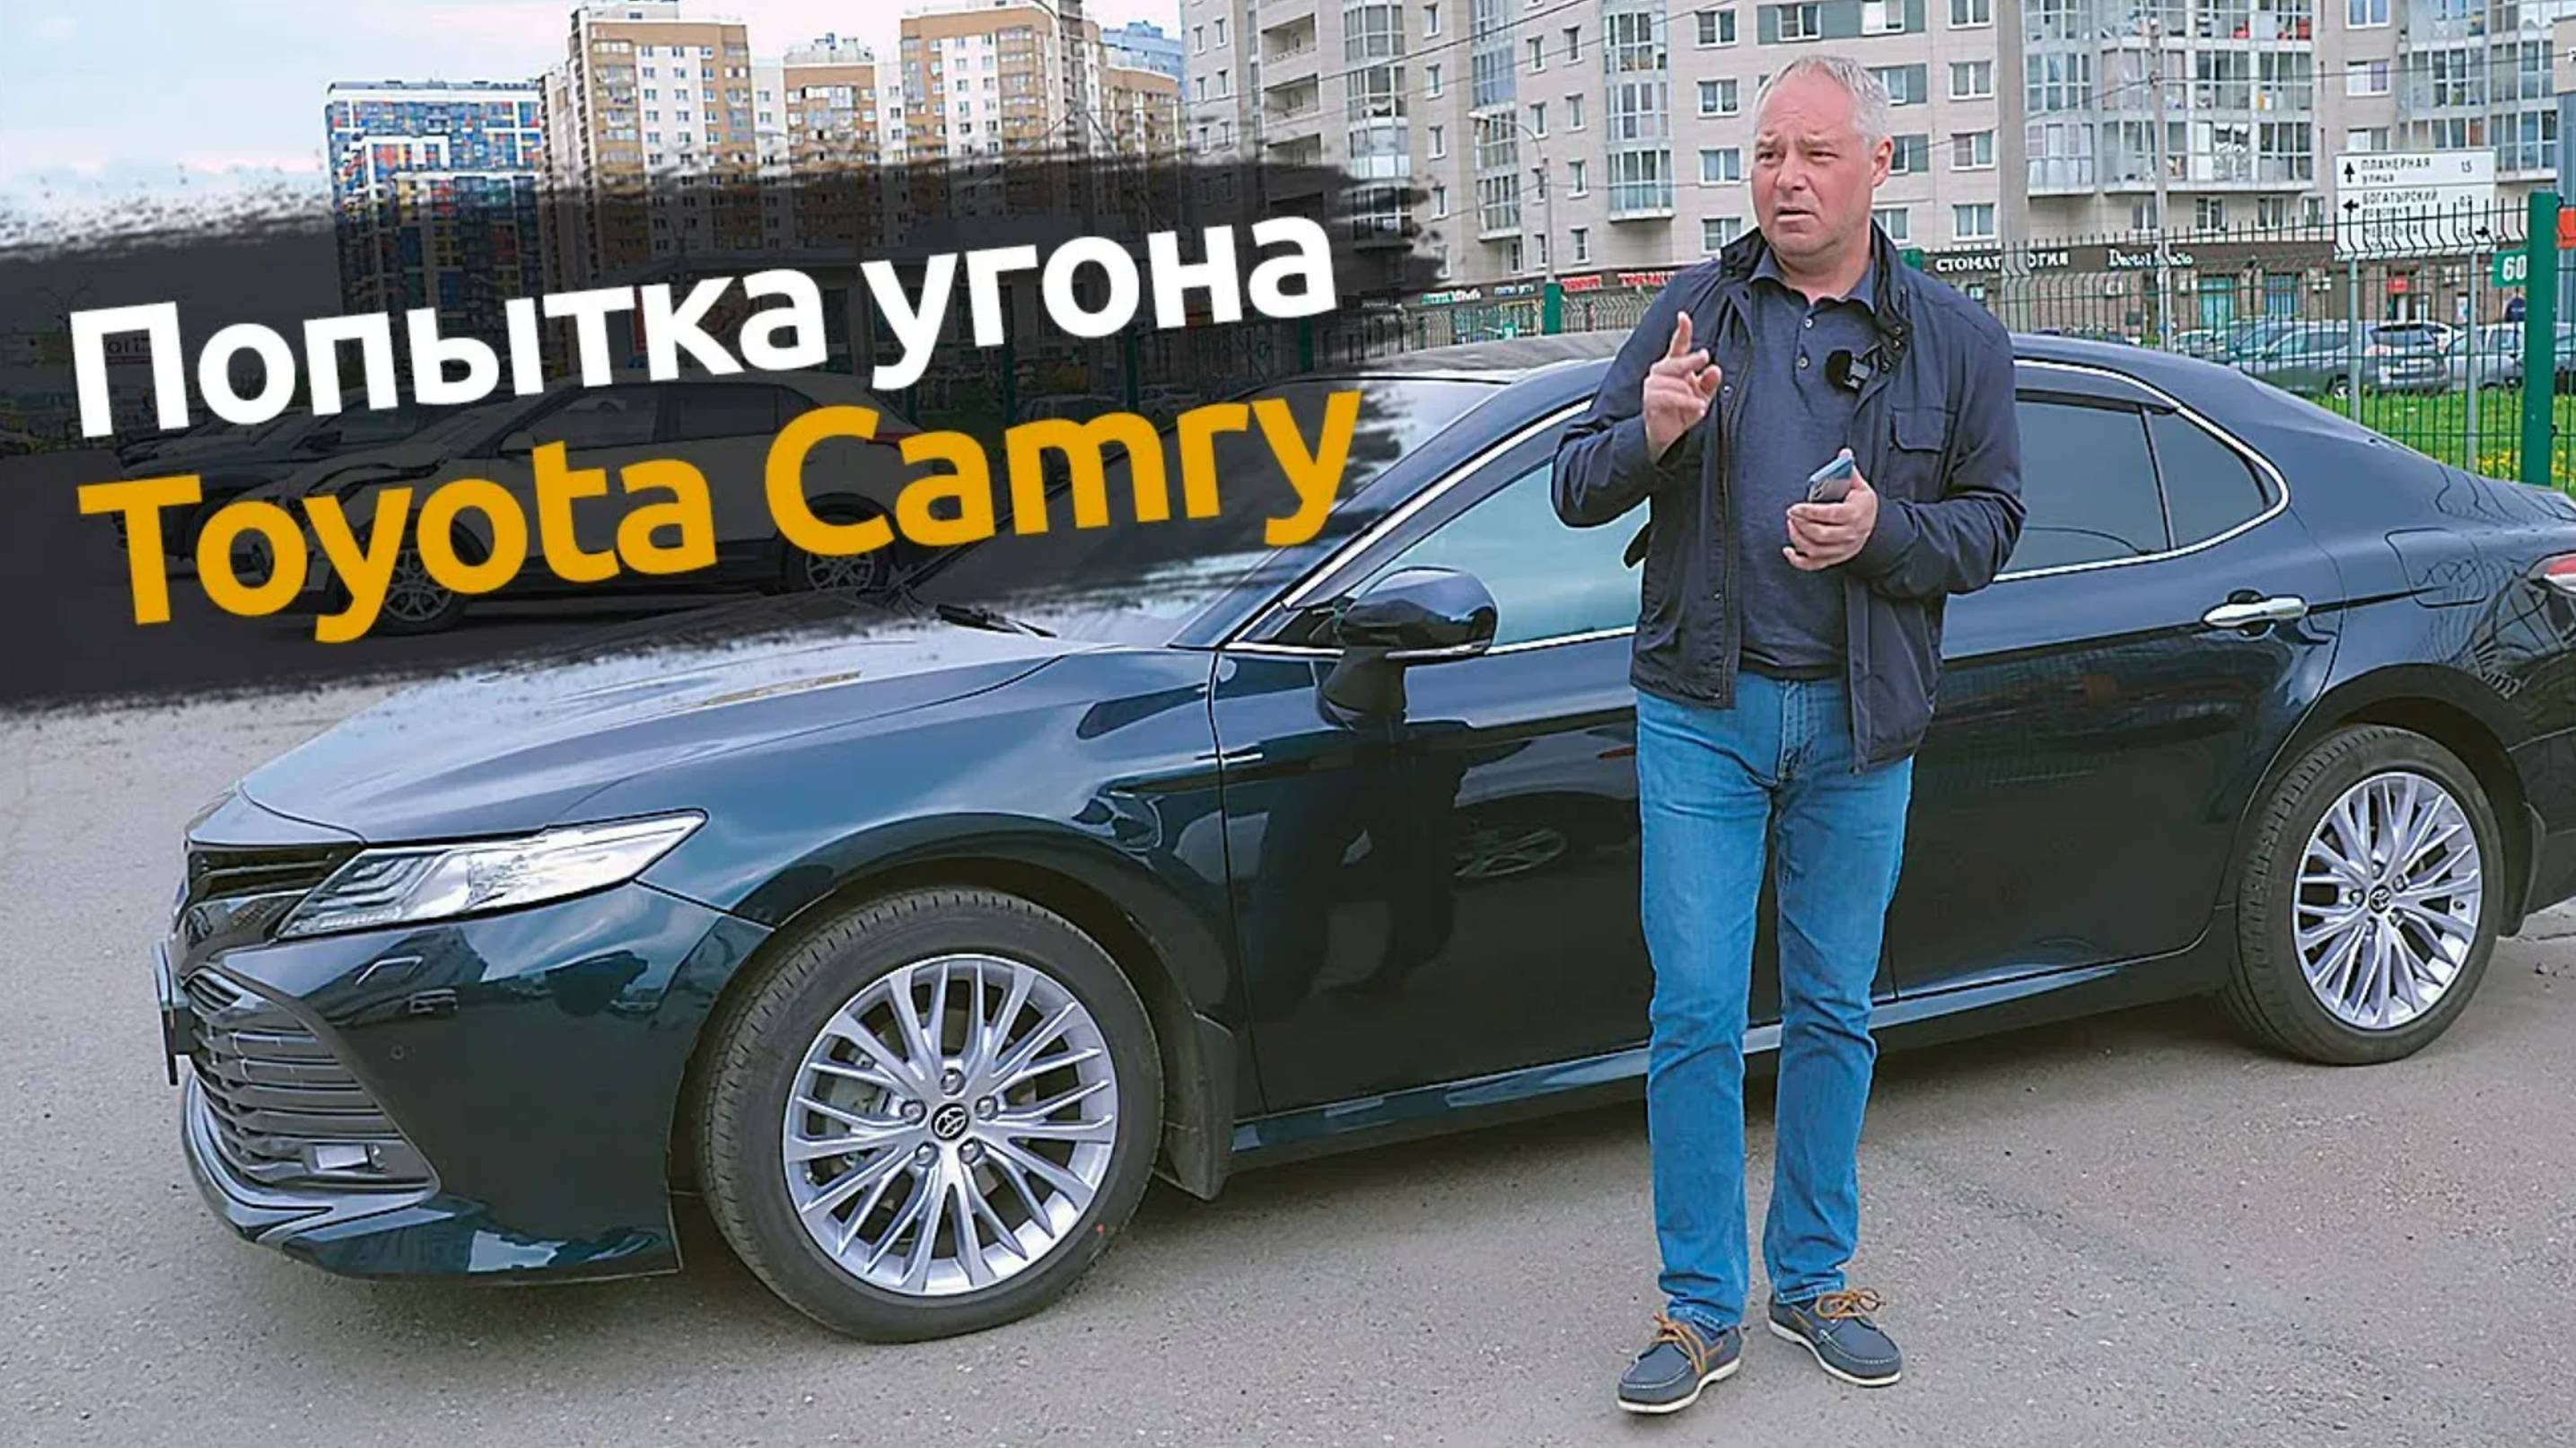 TOYOTA Camry: Попытка угона в Санкт-Петербурге